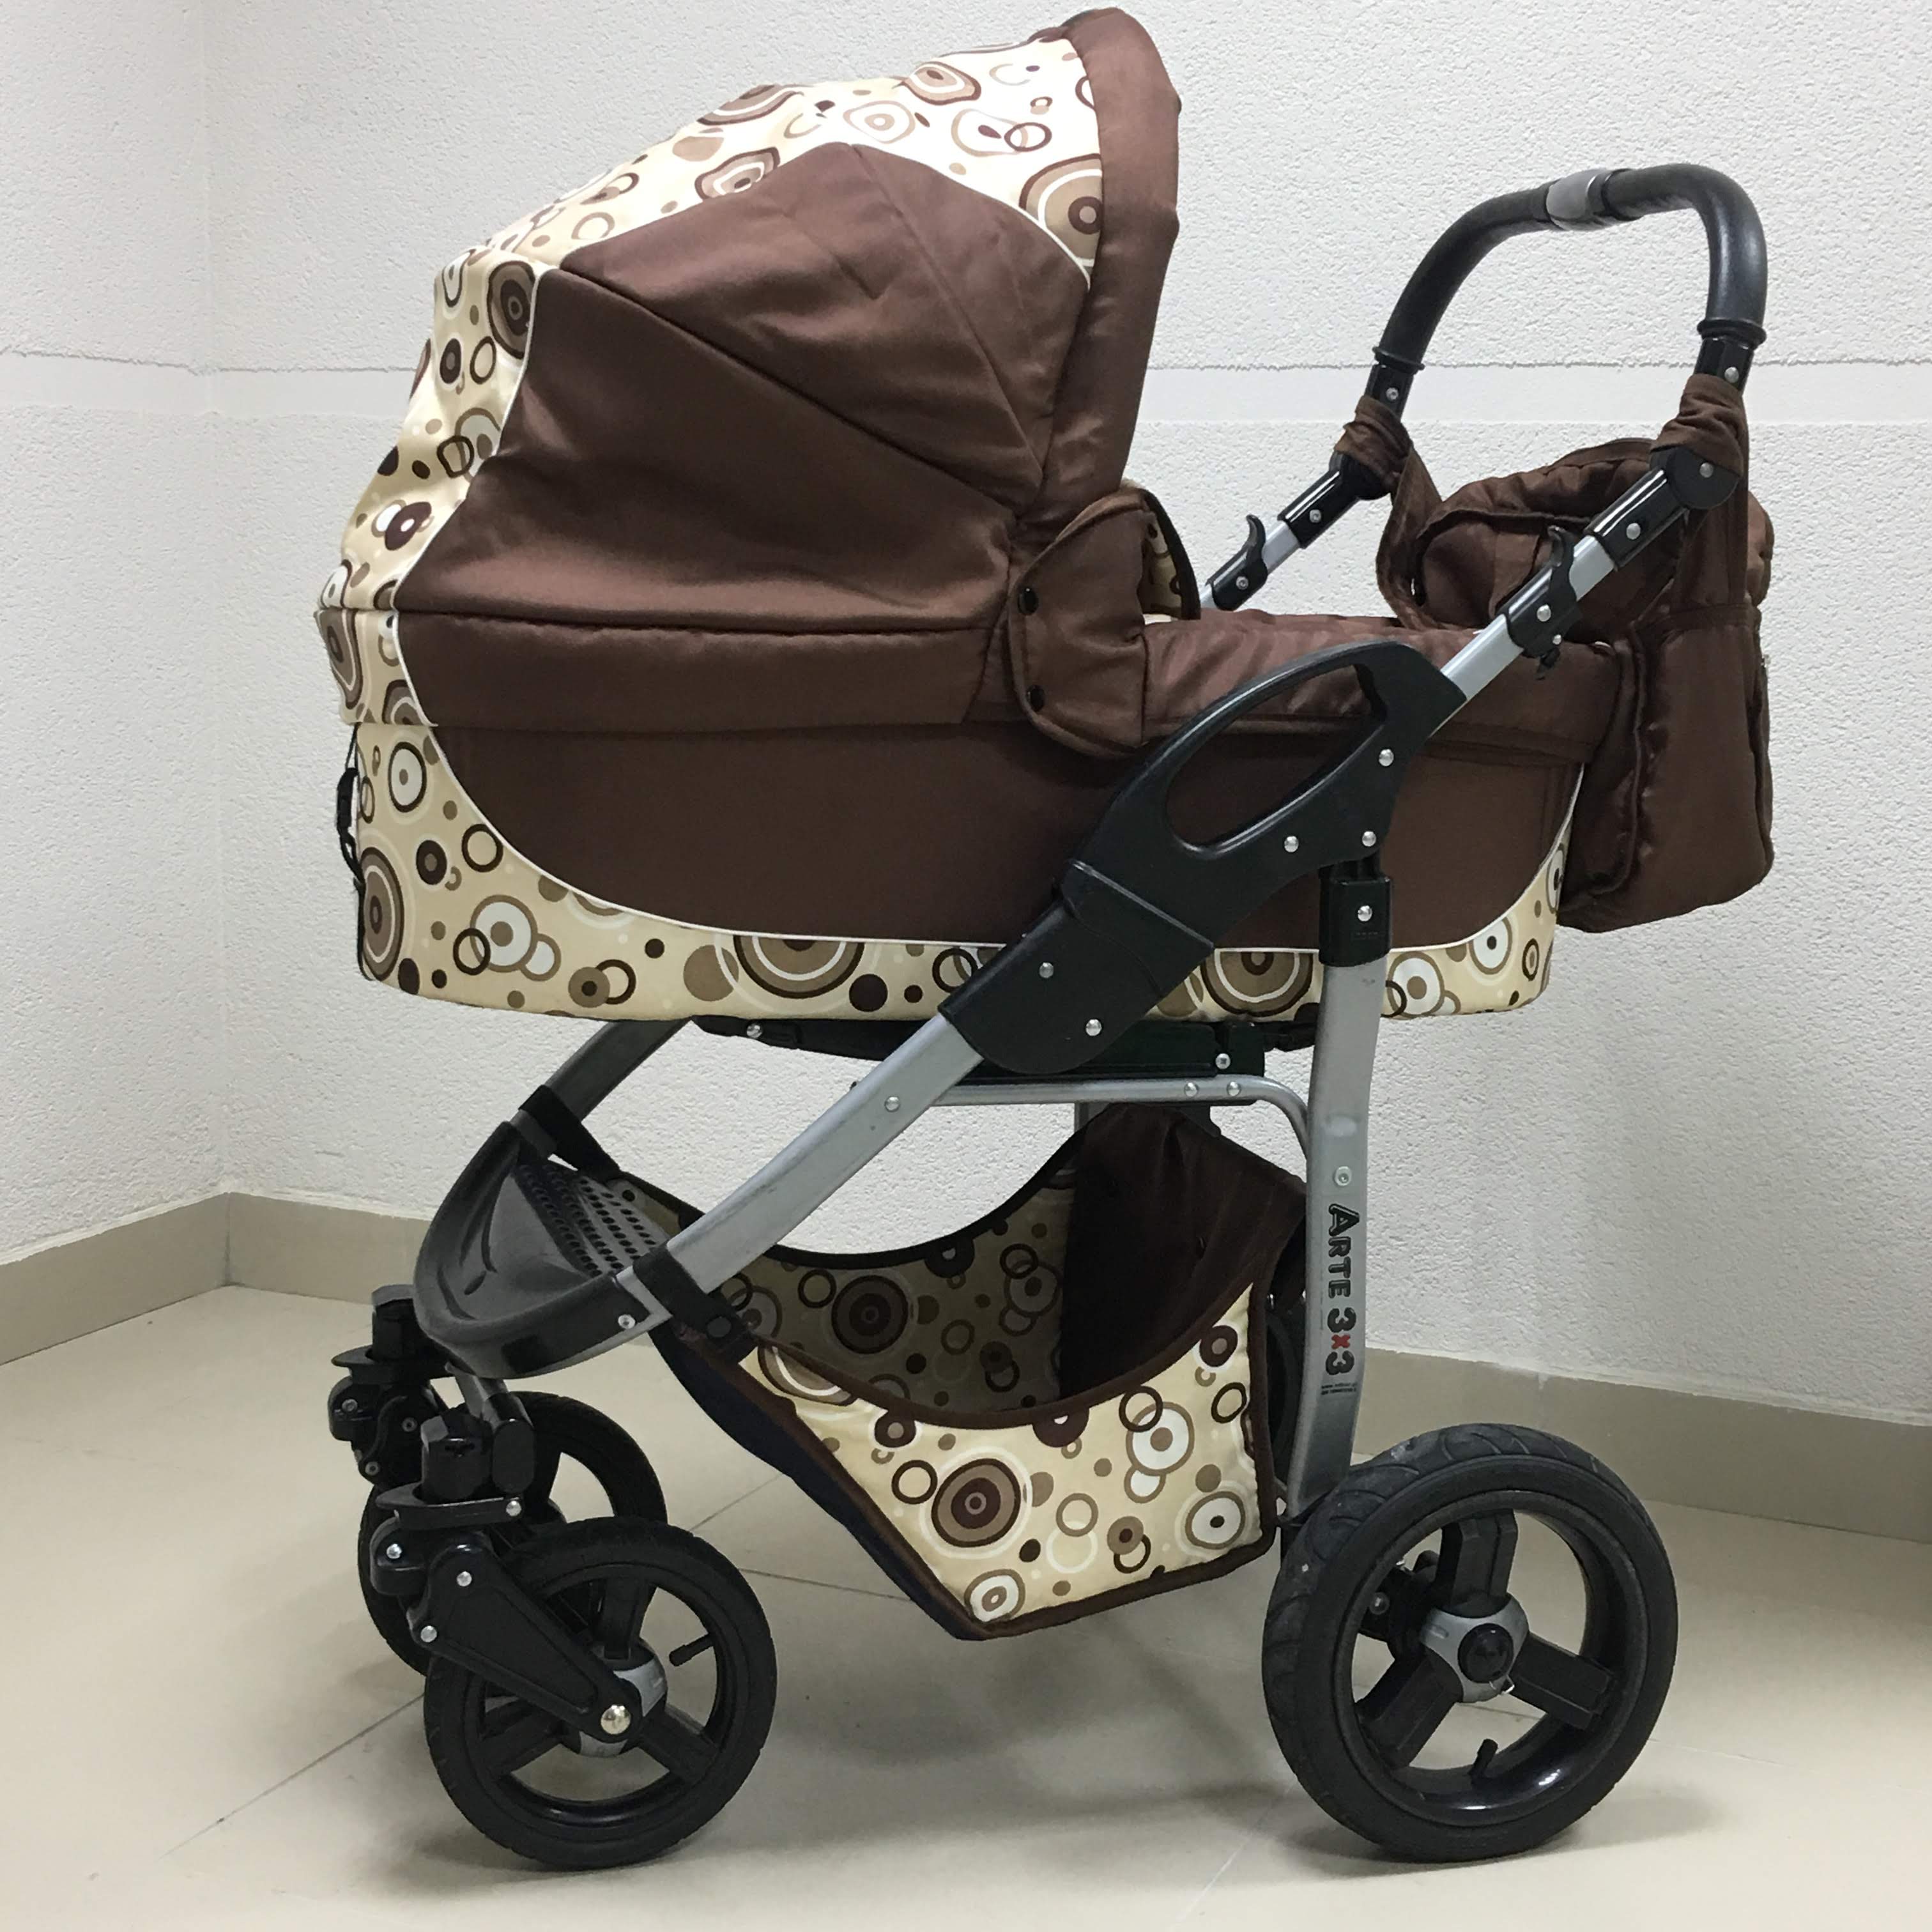  Adbor коляска для новорожденного в прокат